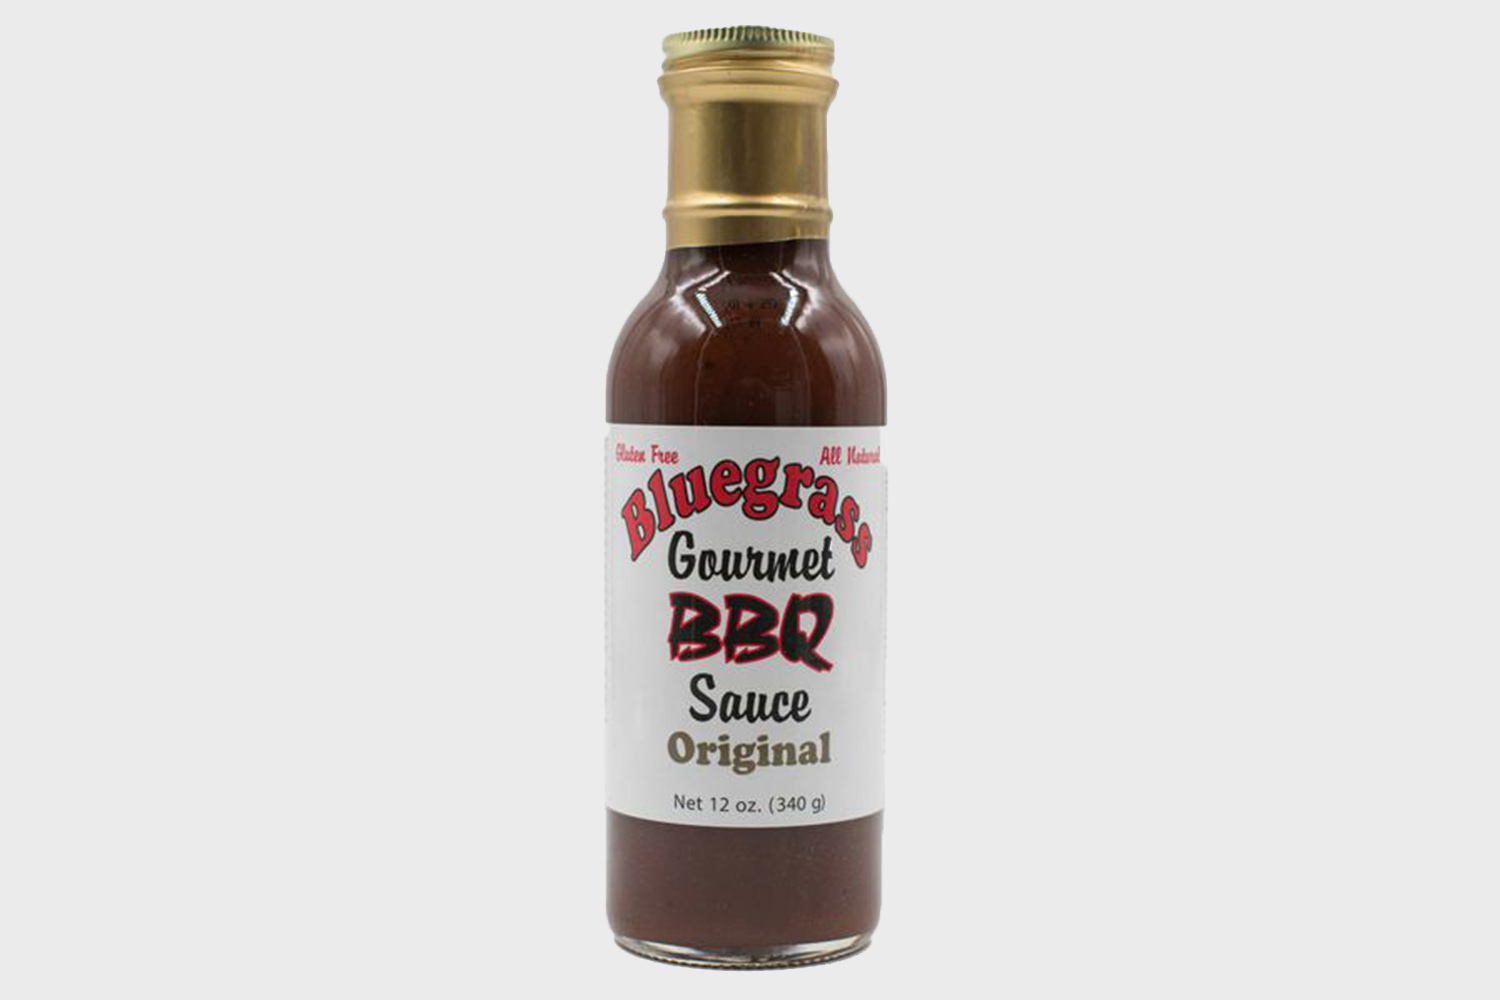 Bluegrass BBQ Sauce Original